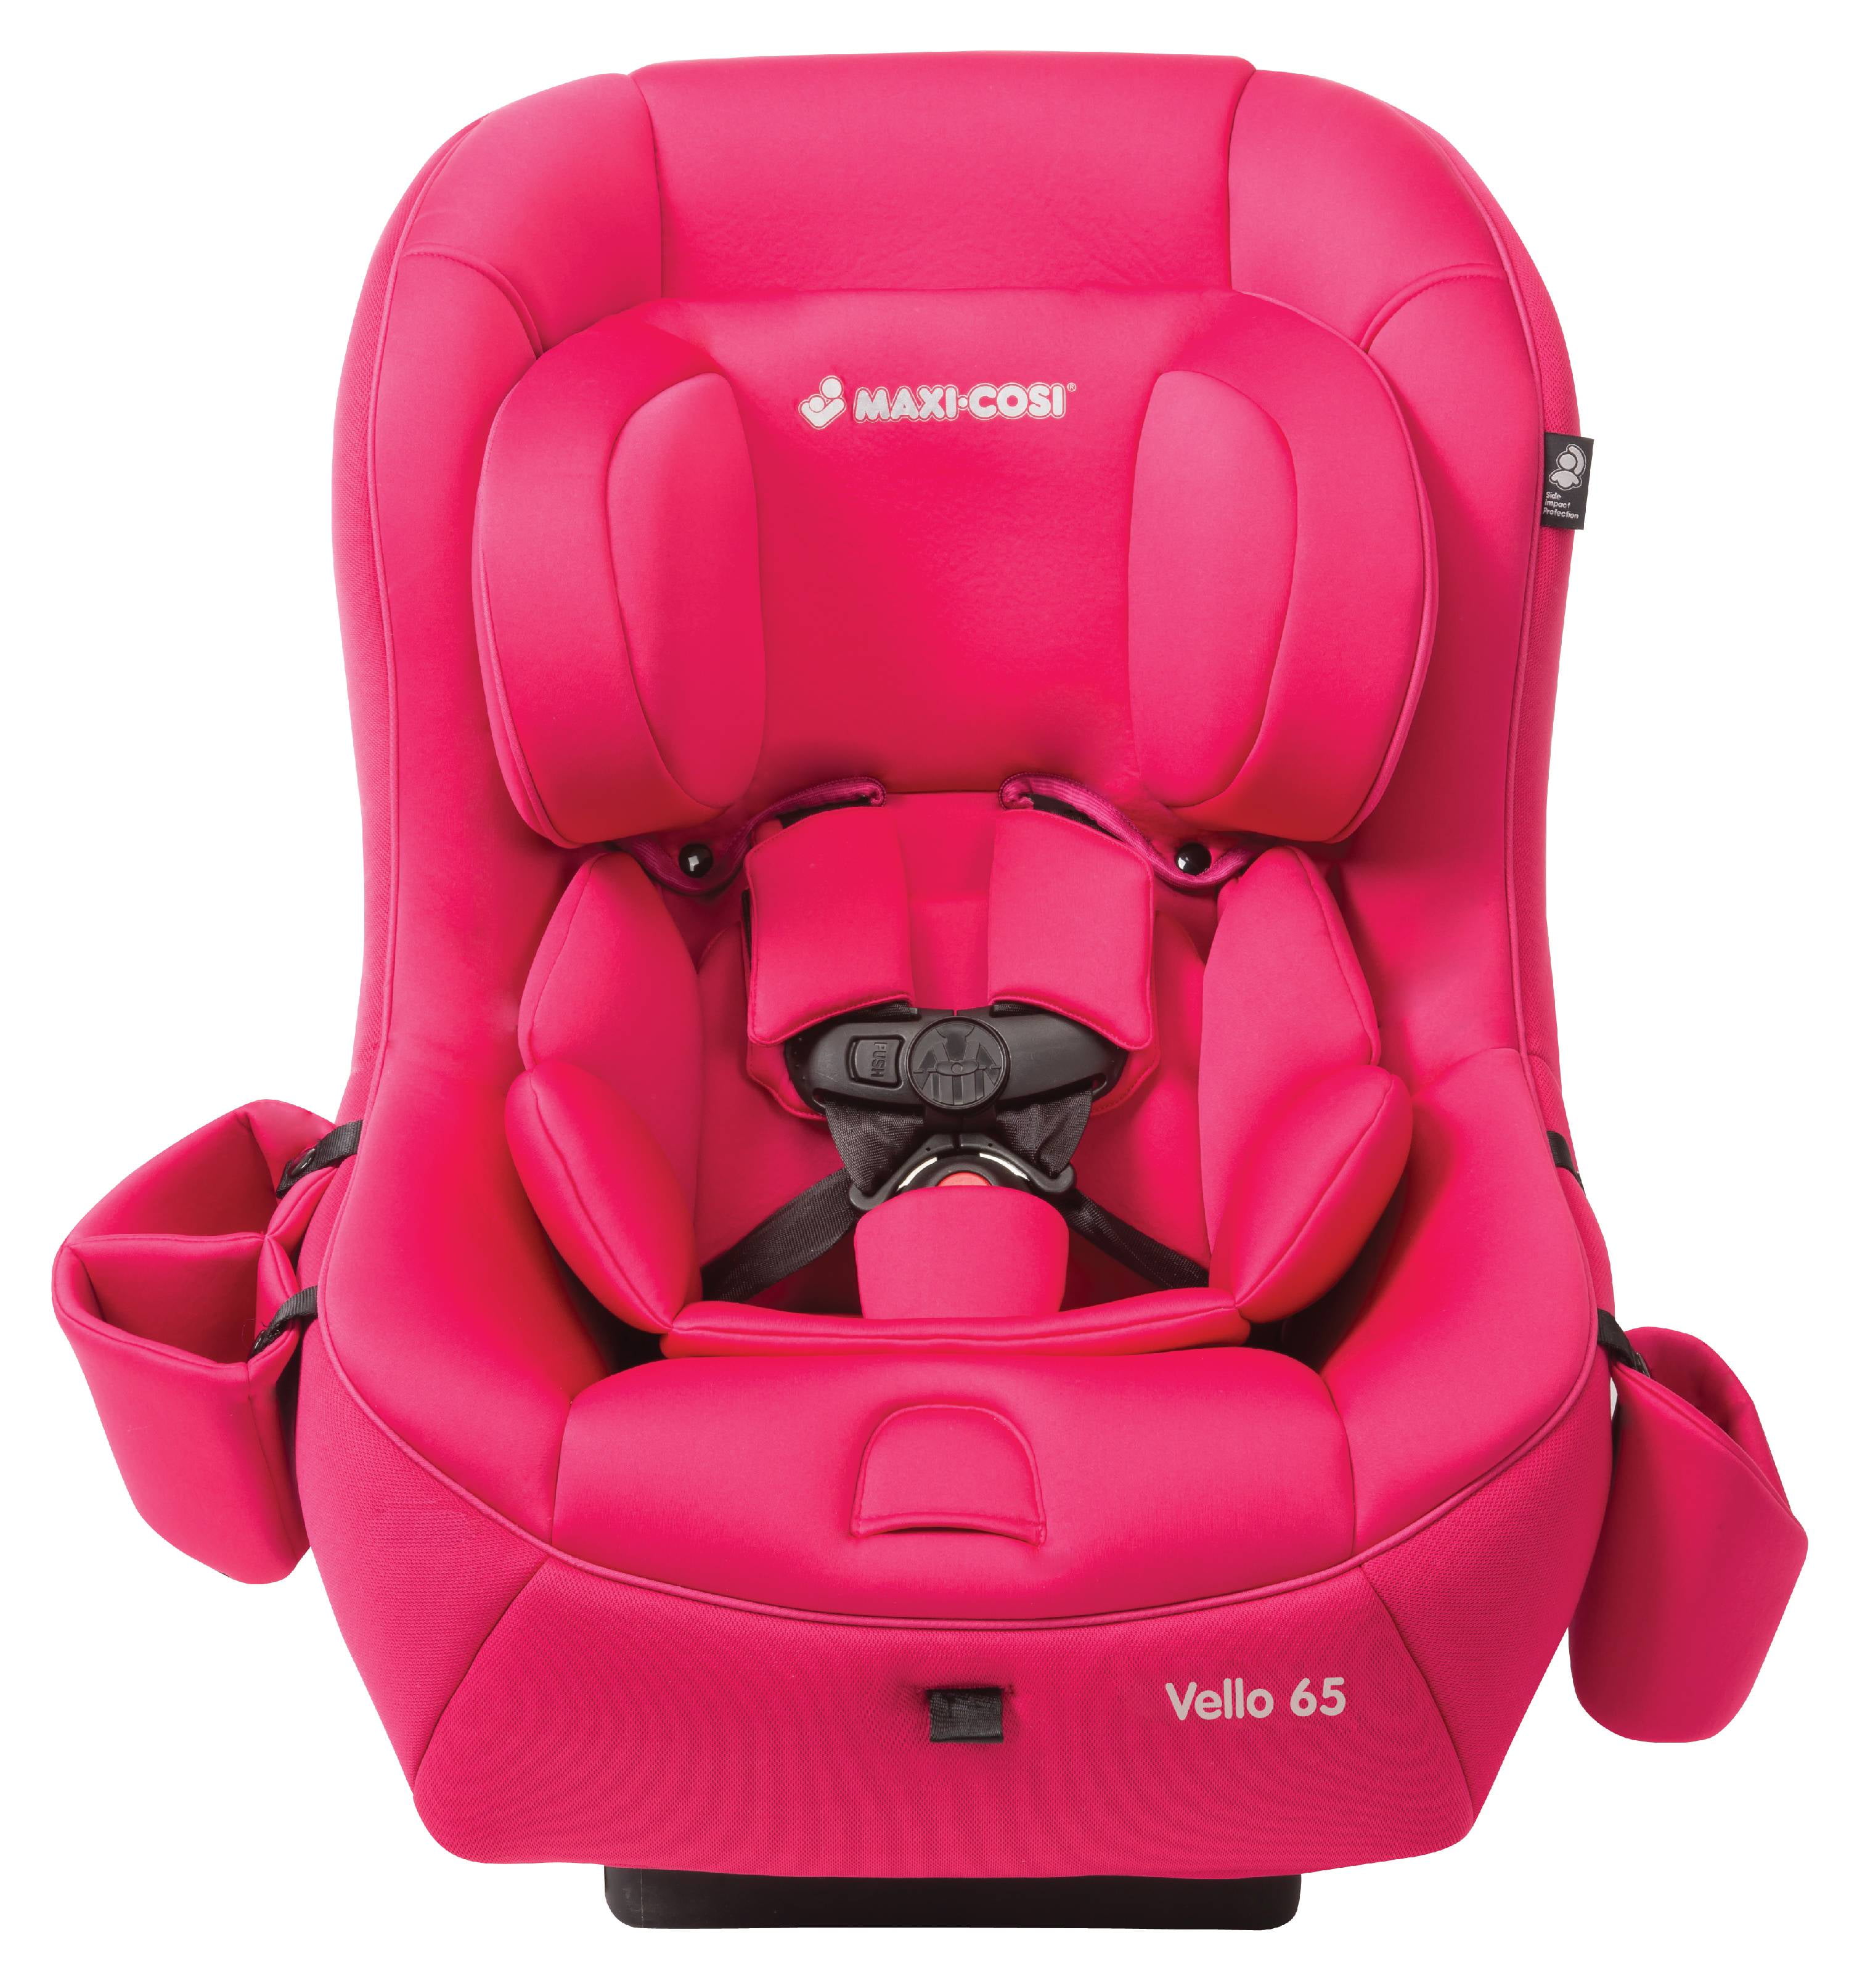 gijzelaar geluid Typisch Maxi Cosi Vello 65 Convertible Car Seat, Pink - Walmart.com